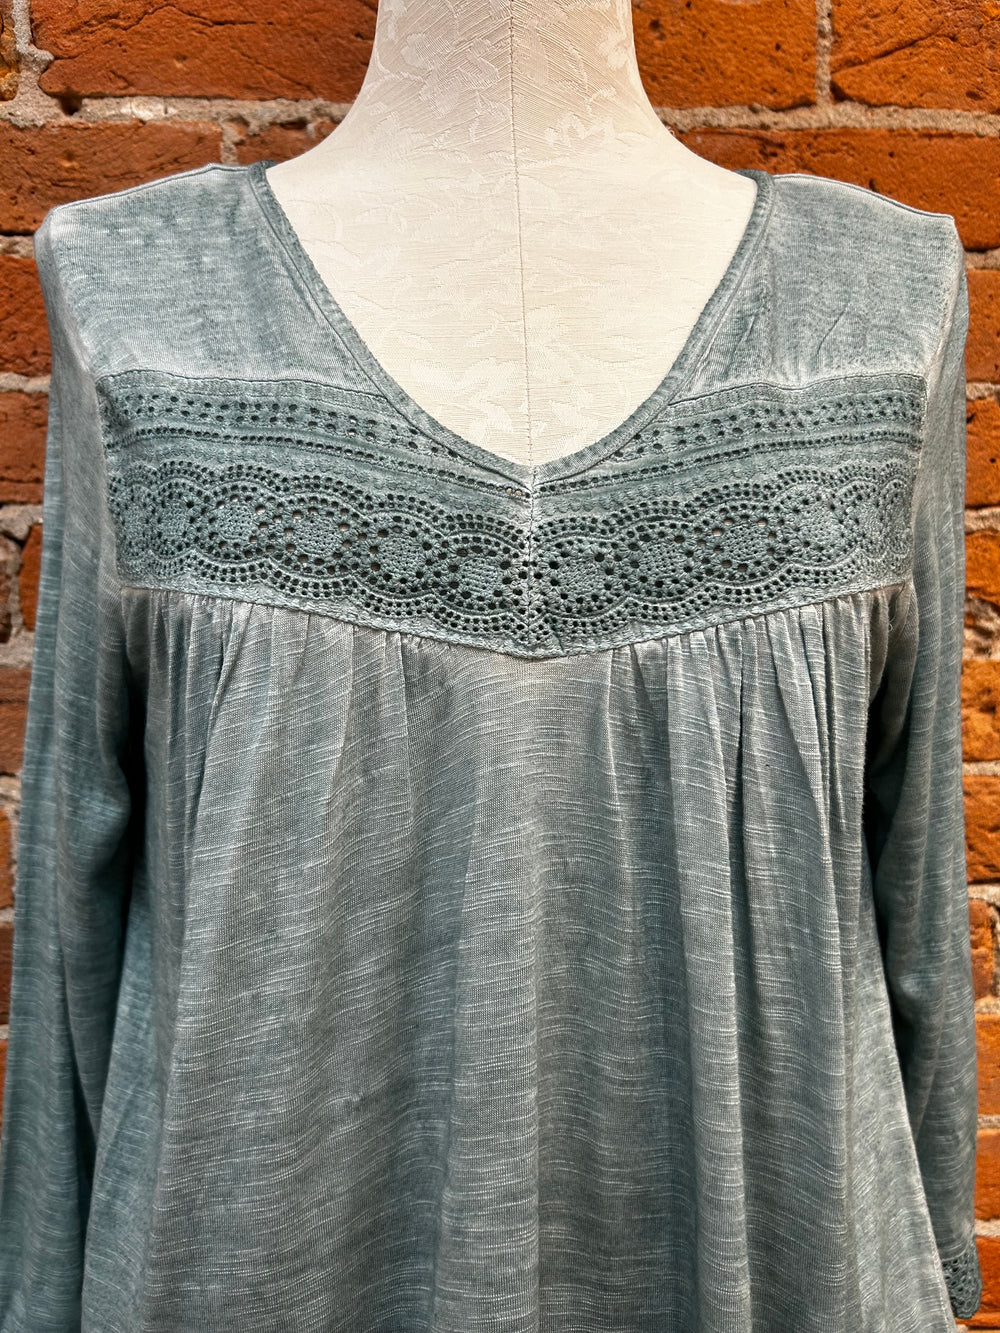 Keren Hart shirt 24005, crochet panel v-neck